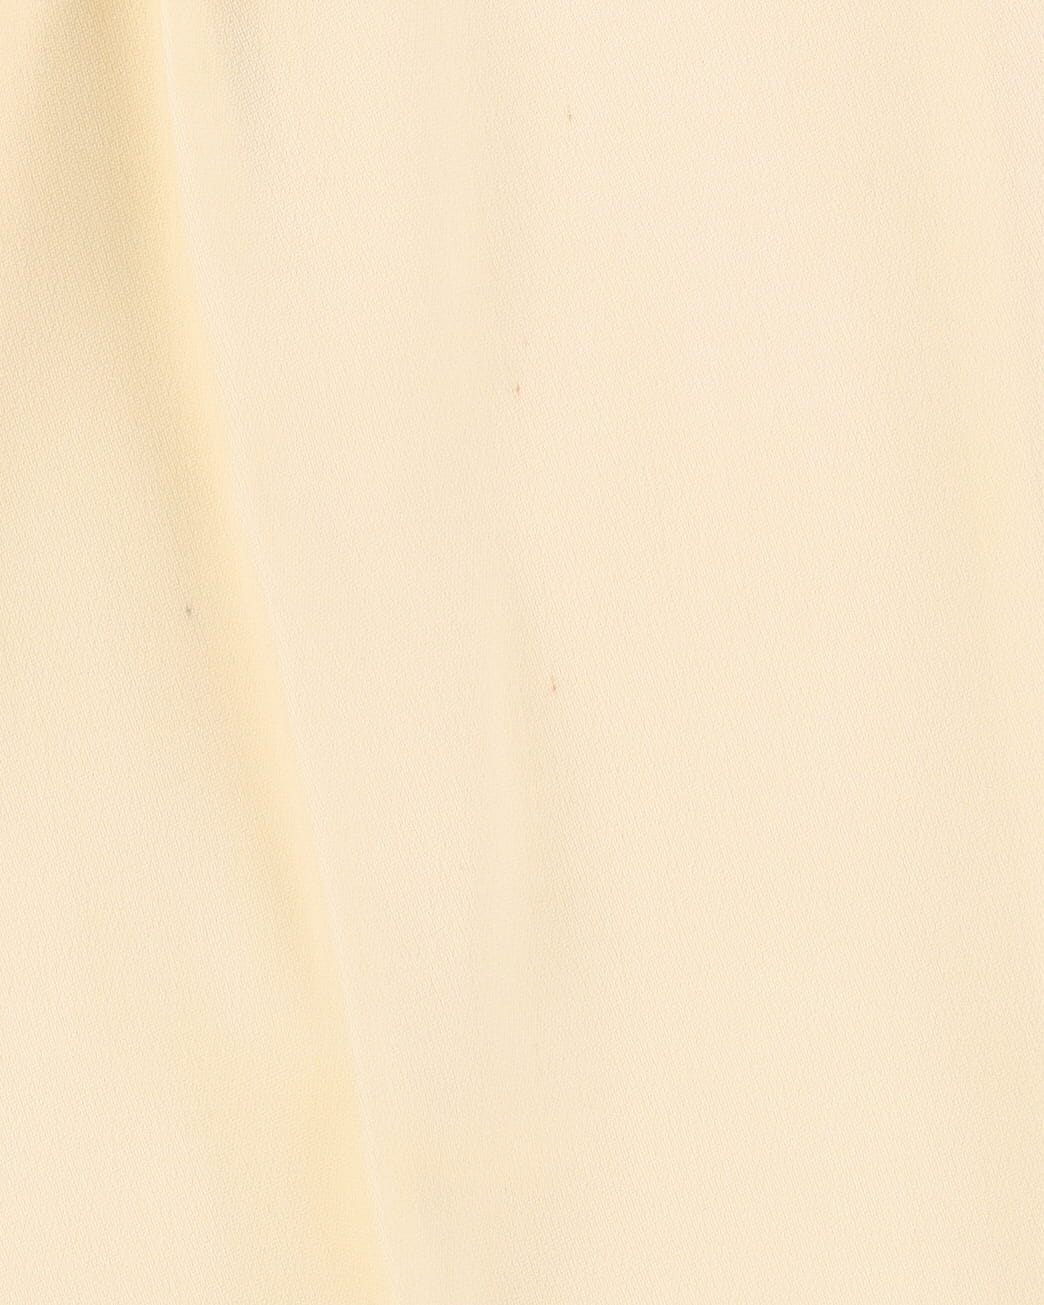 Giorgio Armani Le Collezioni Cream Trousers - W24 L28